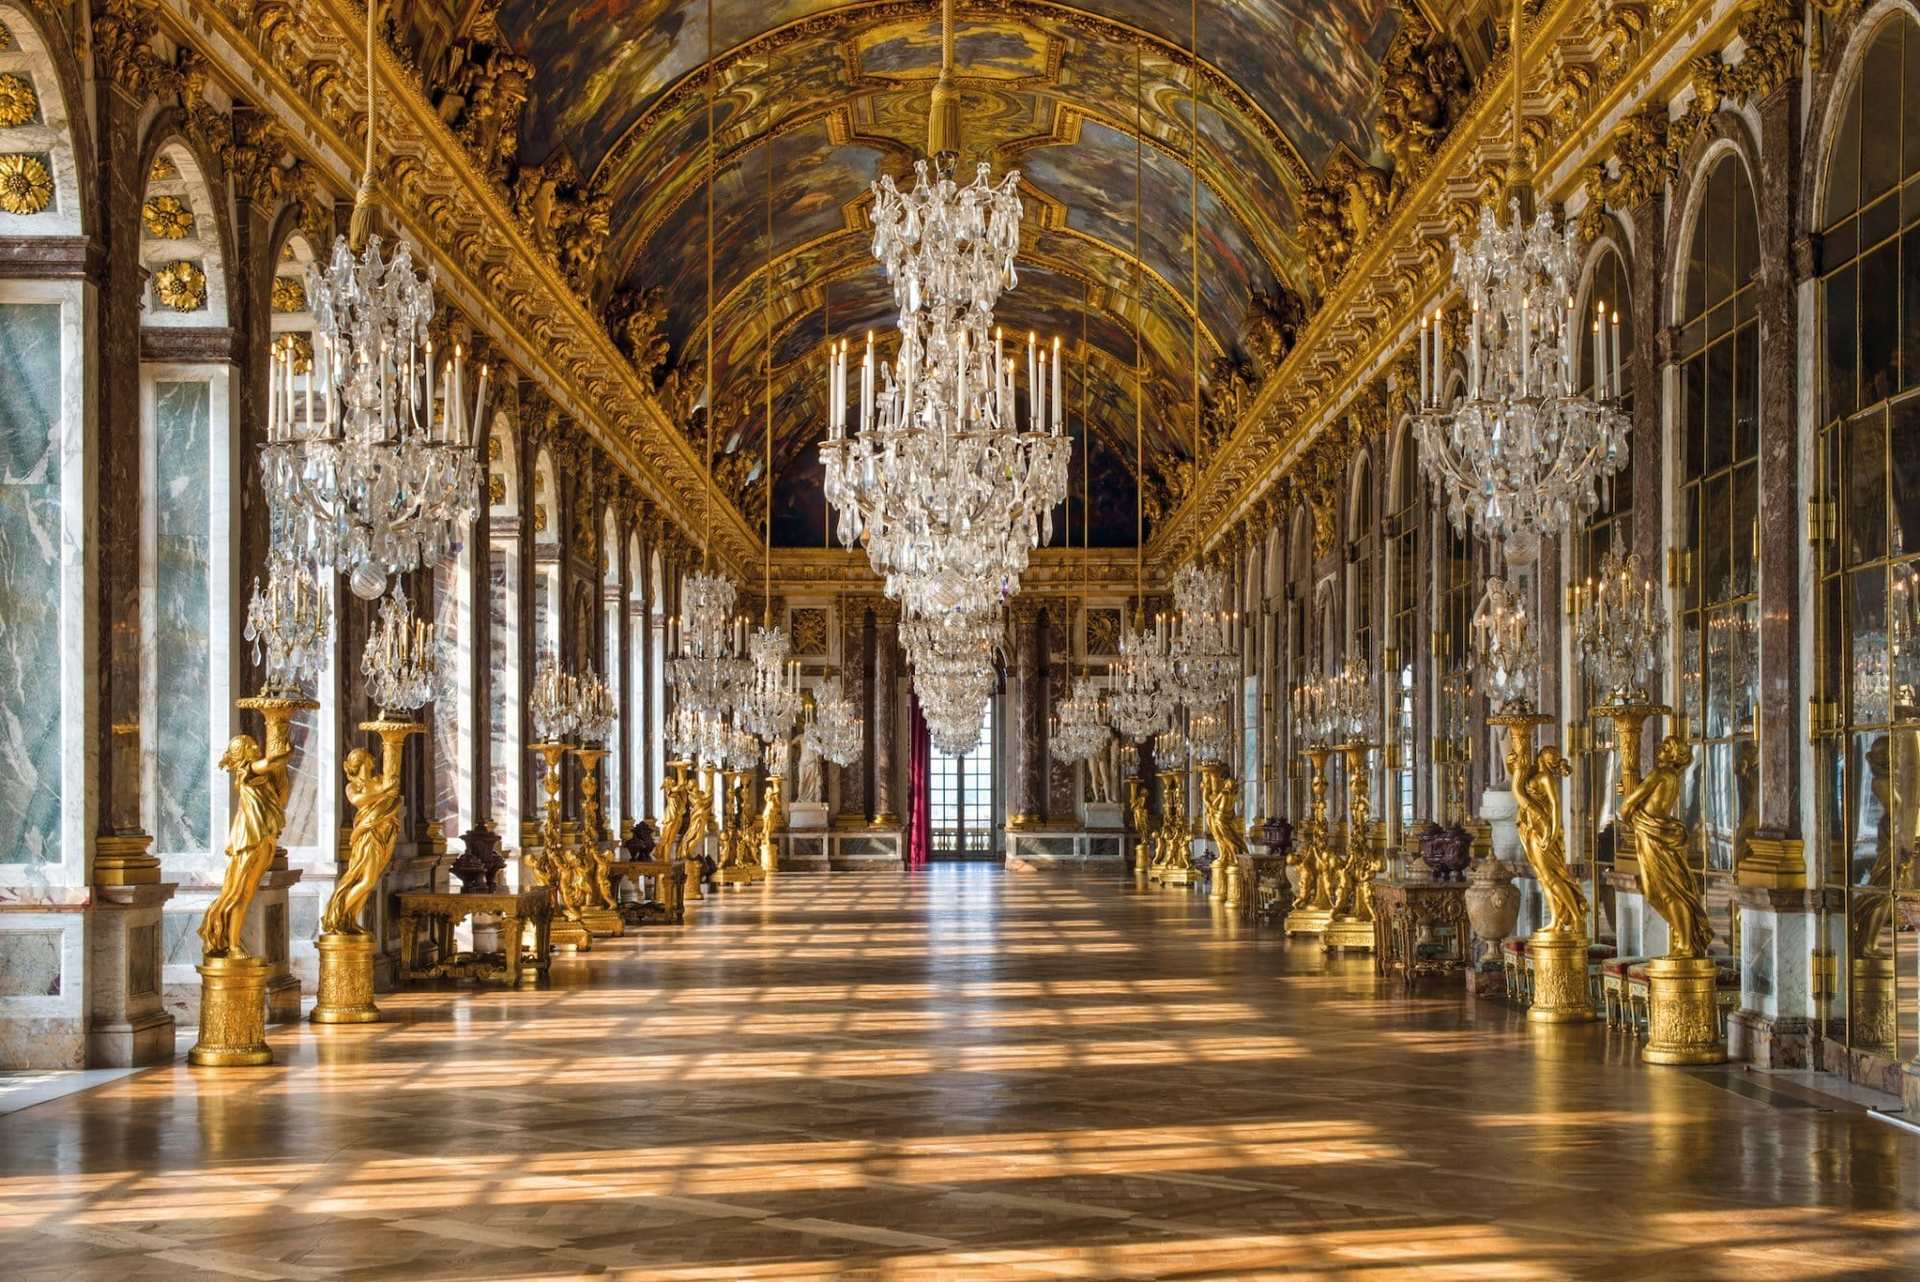 Chateau de versailles. Версаль дворец Франция. Королевский дворец в Версале. Бальный зал Фонтенбло. Шато Версальского дворца.